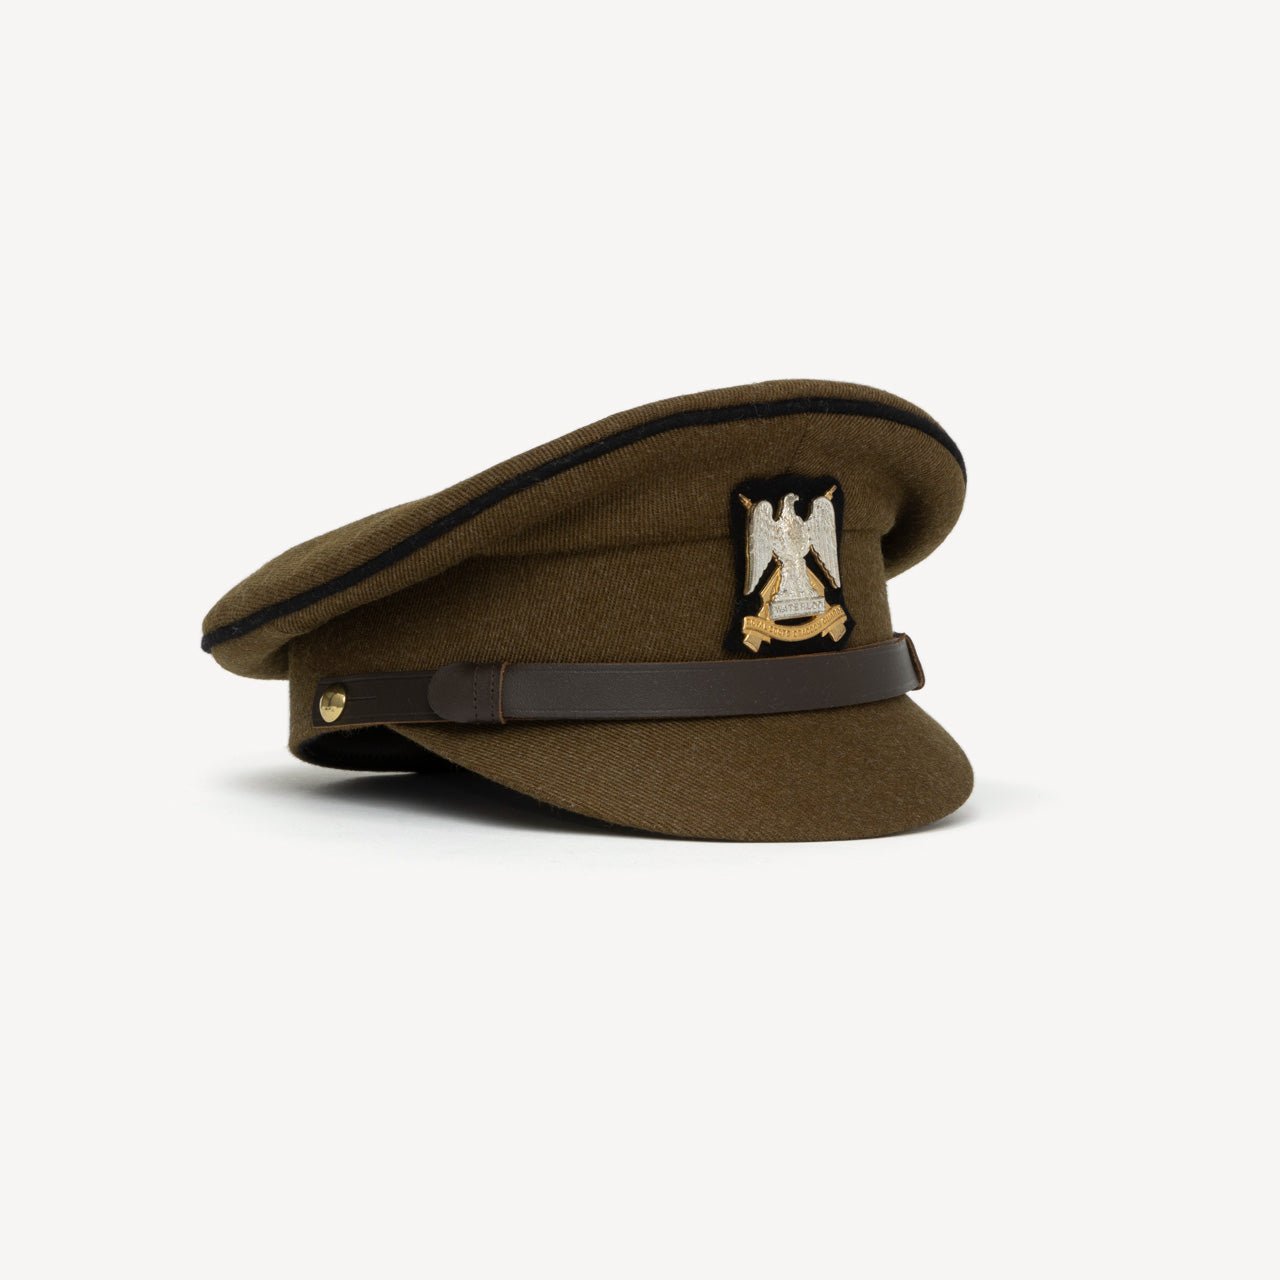 No.2 SERVICE DRESS FAD CAP (KHAKI) GUARDS - Swaine